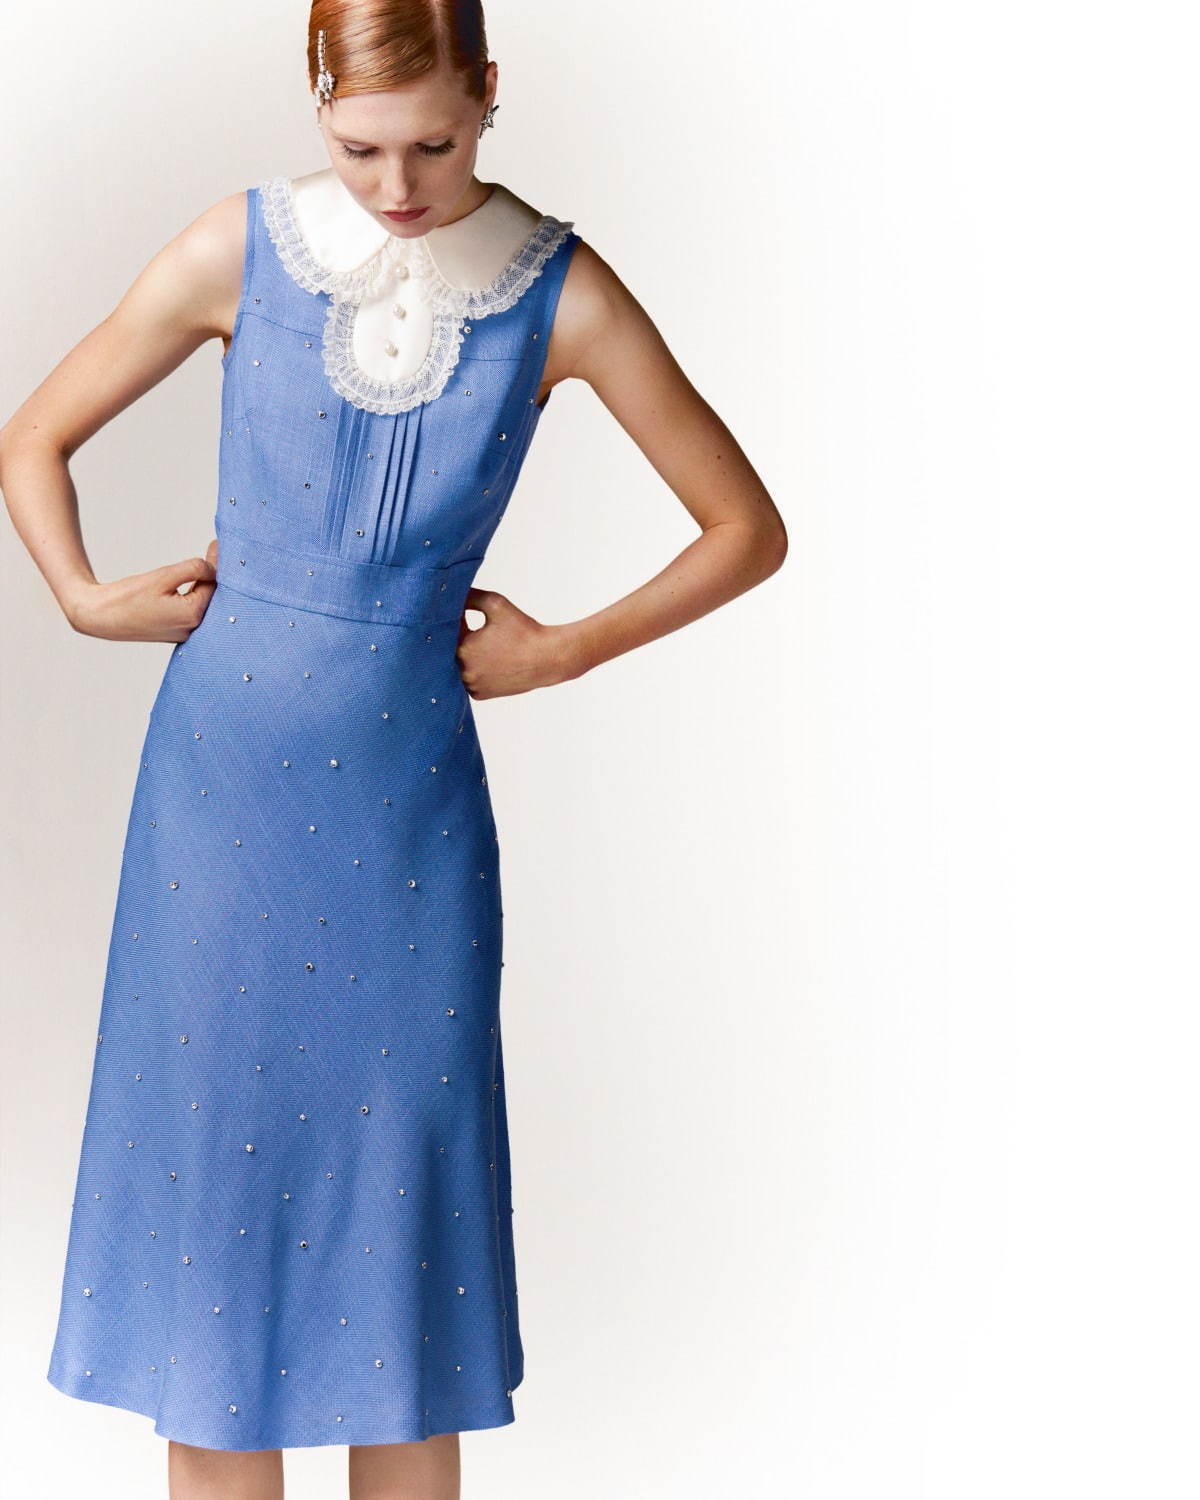 ミュウミュウ、ヴィンテージアイテムをリメイクした“1点物”ドレス - 青山店で全8種類発売 - ファッションプレス